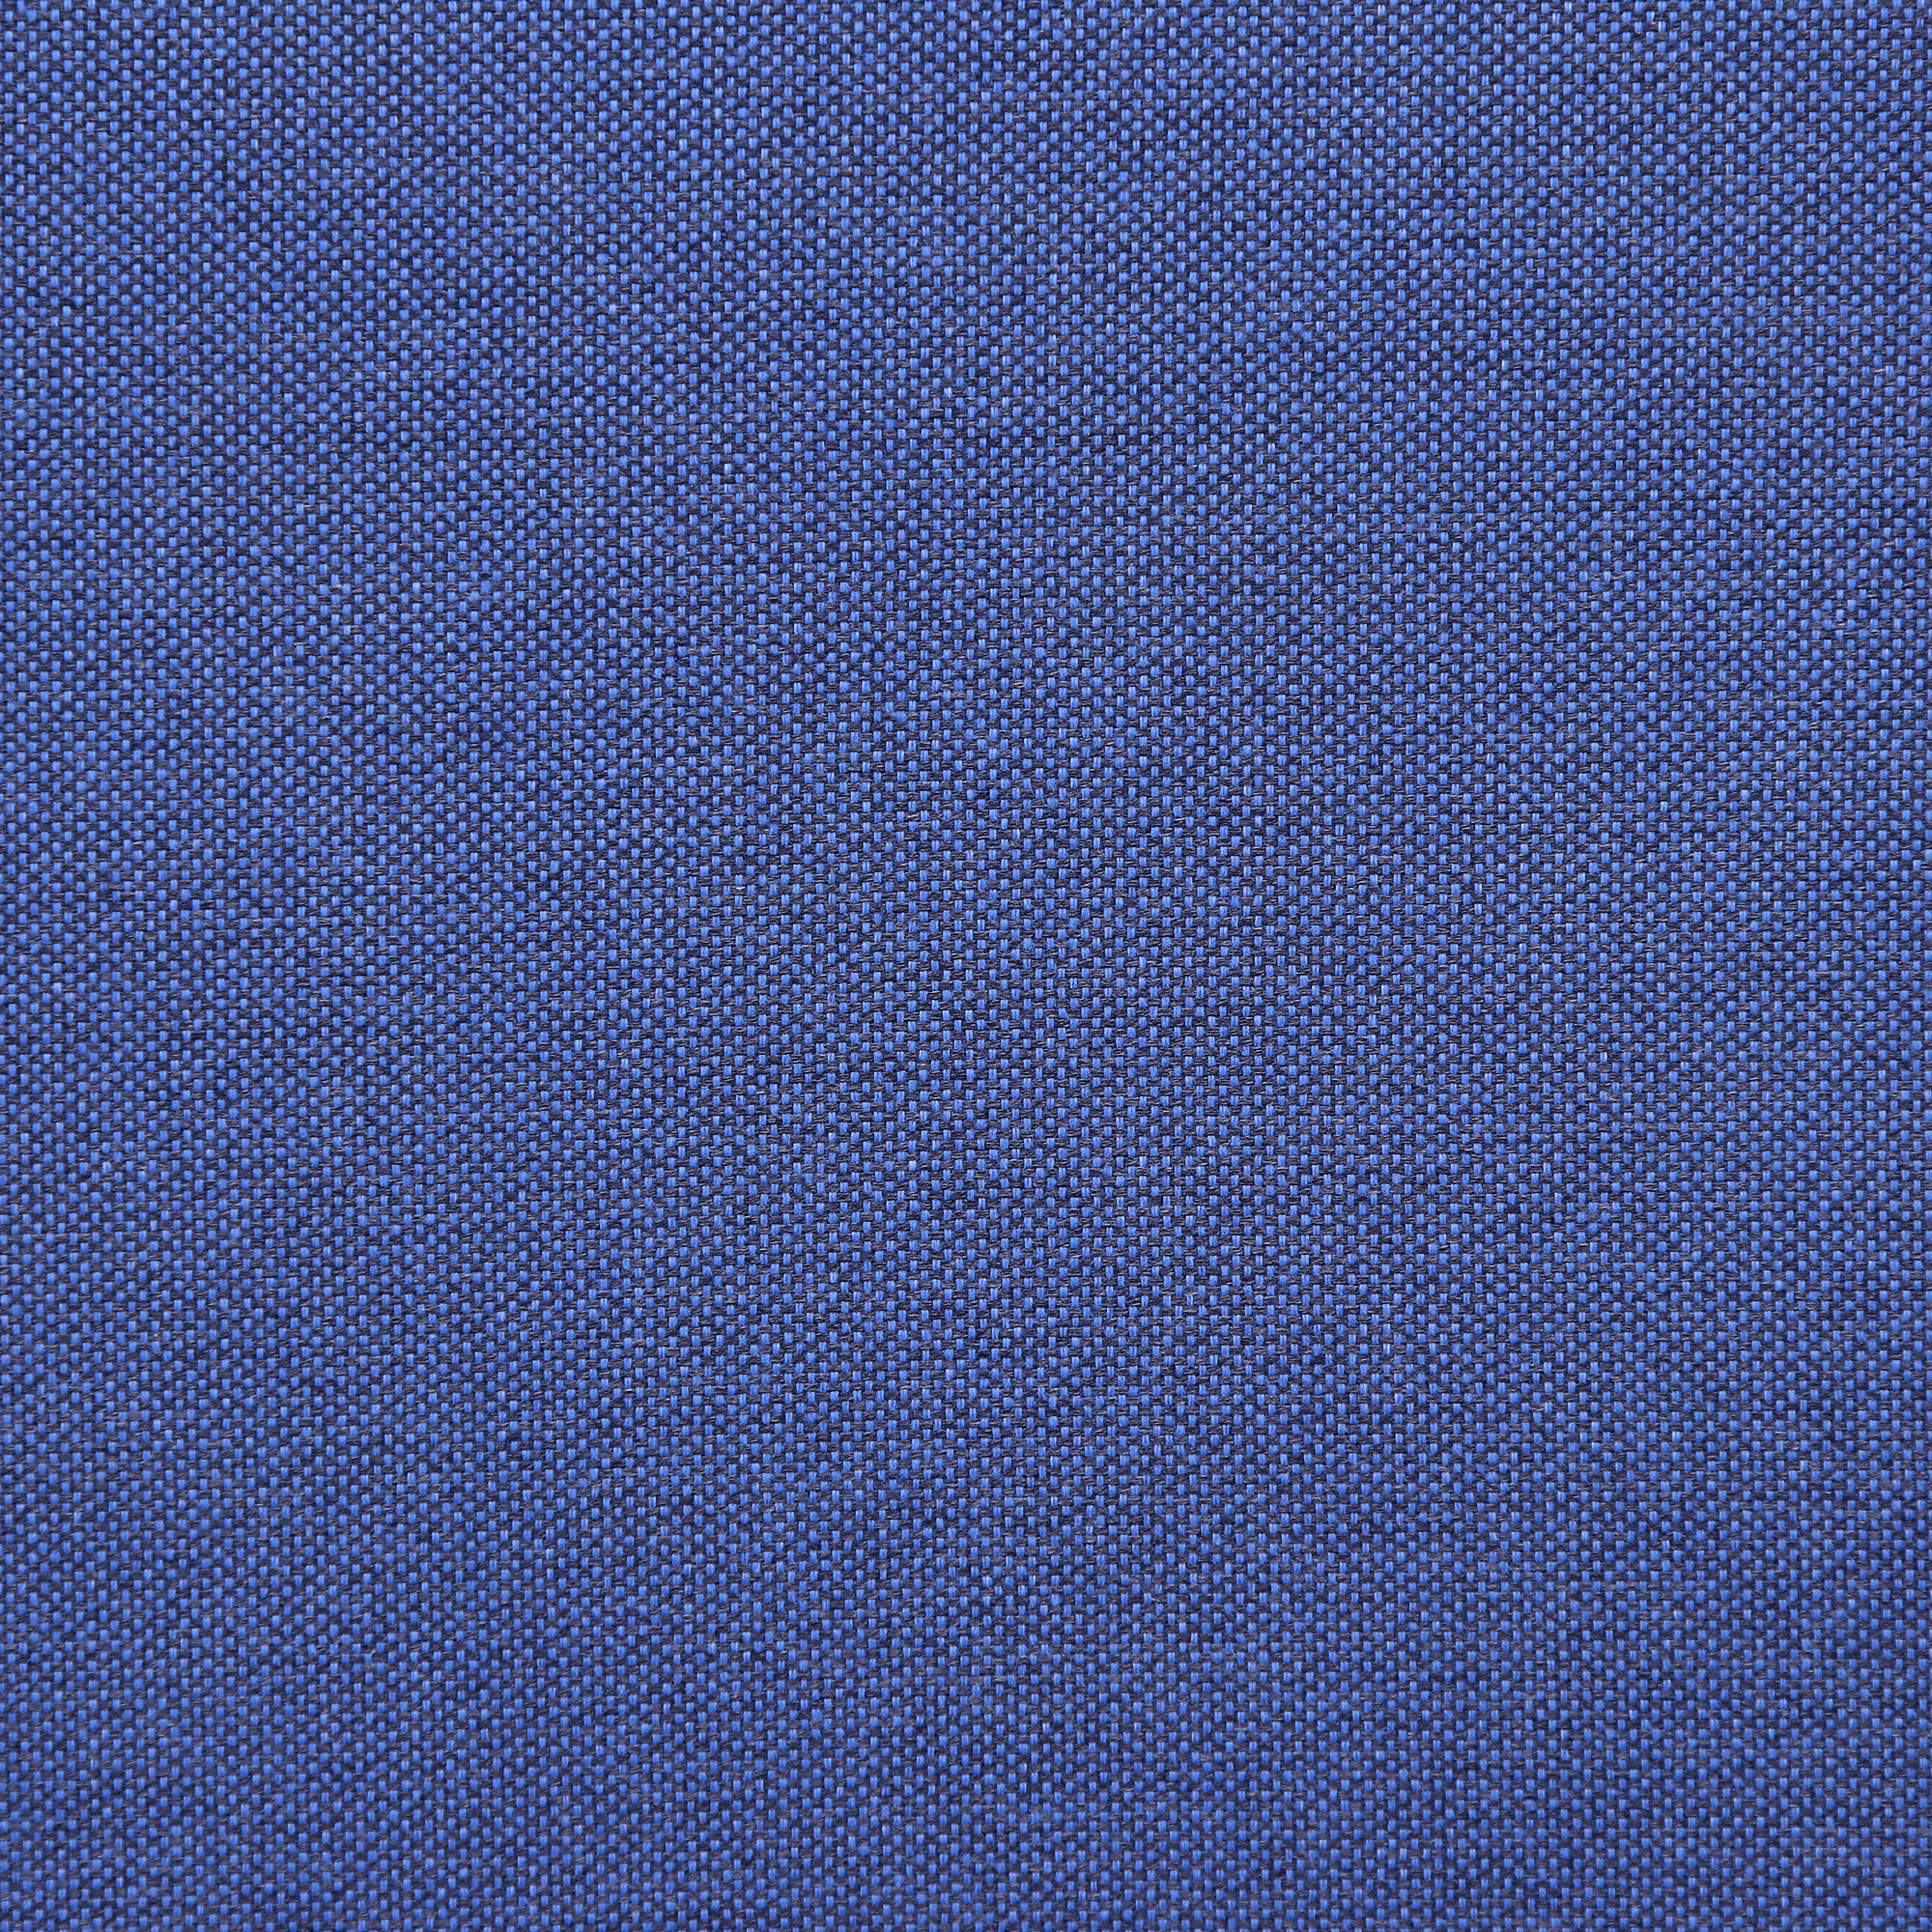 Комплект садовой мебели LF серый с синим из 4 пердметов, цвет синий, размер 172х61х76 - фото 15